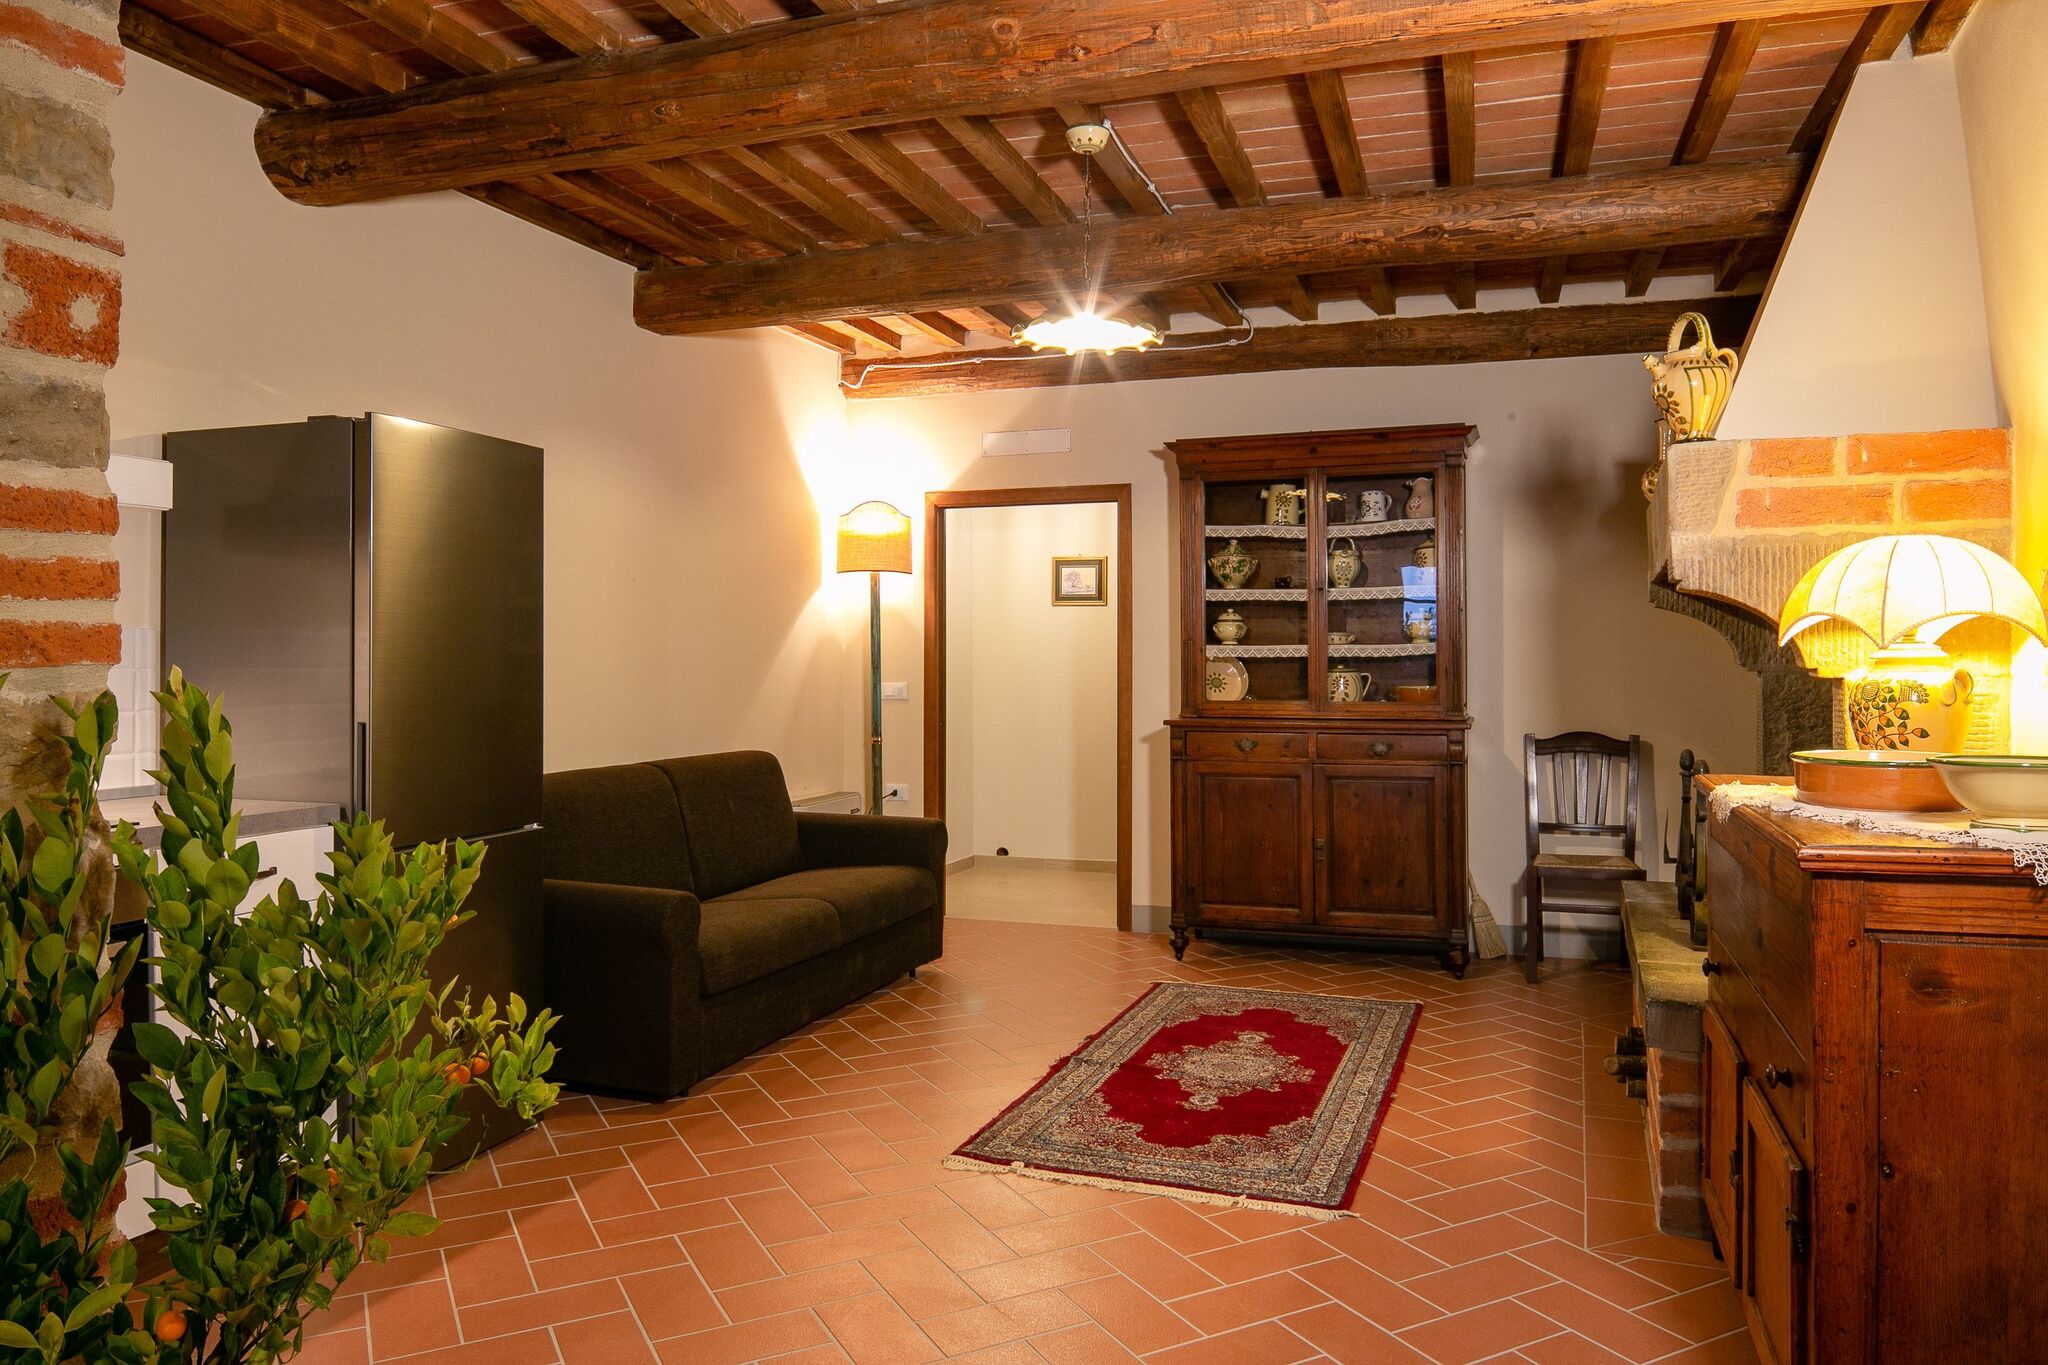 Maison de vacances confortable à Castiglion Fiorentino dans la vallée de Chio